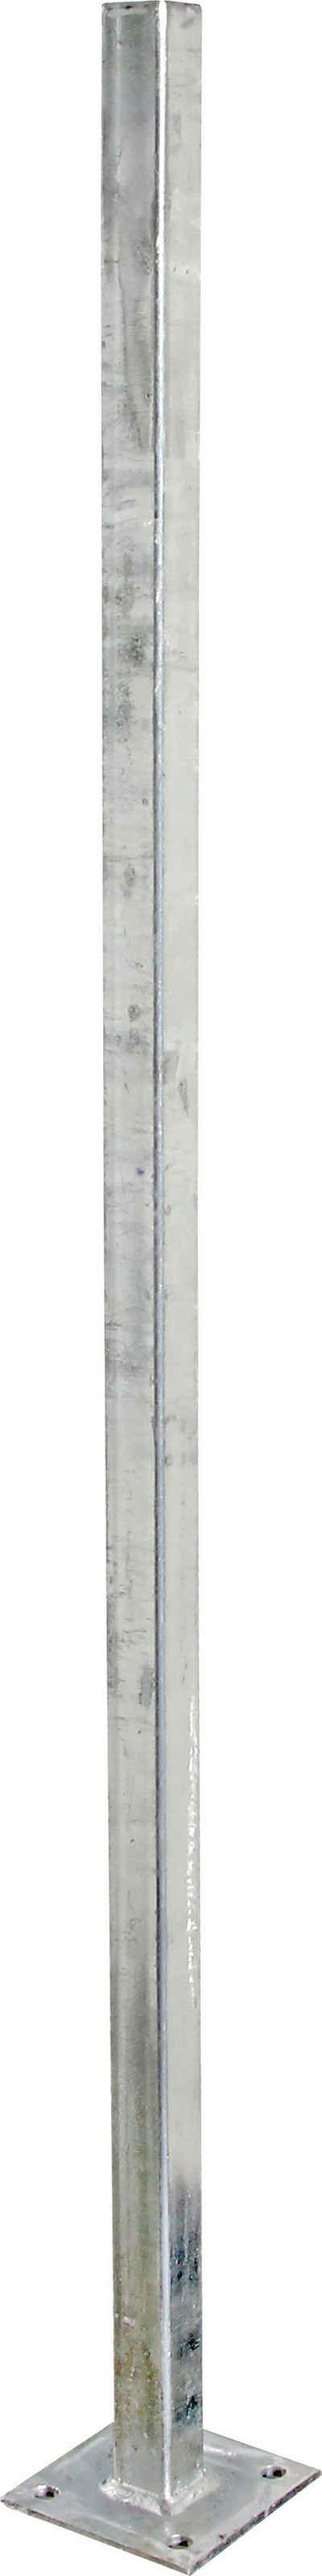 Alberts Zaunpfosten Universal, zum Aufschrauben, Länge 1020 mm, Pfosten 30 x 30 mm